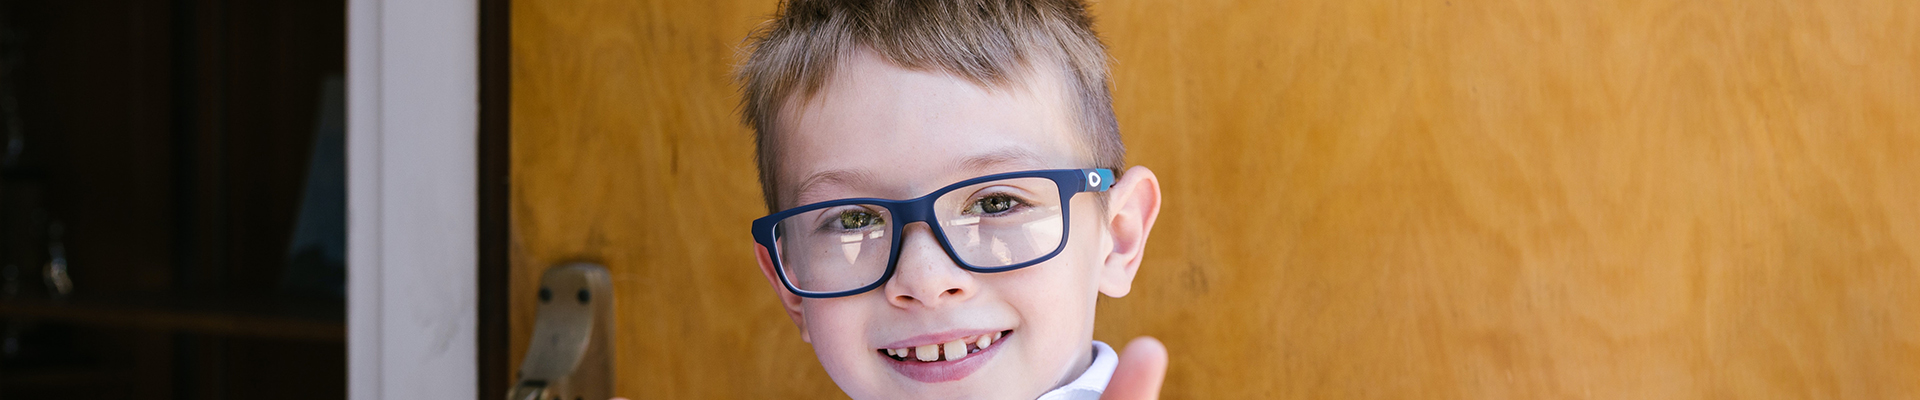 prevent myopia in children